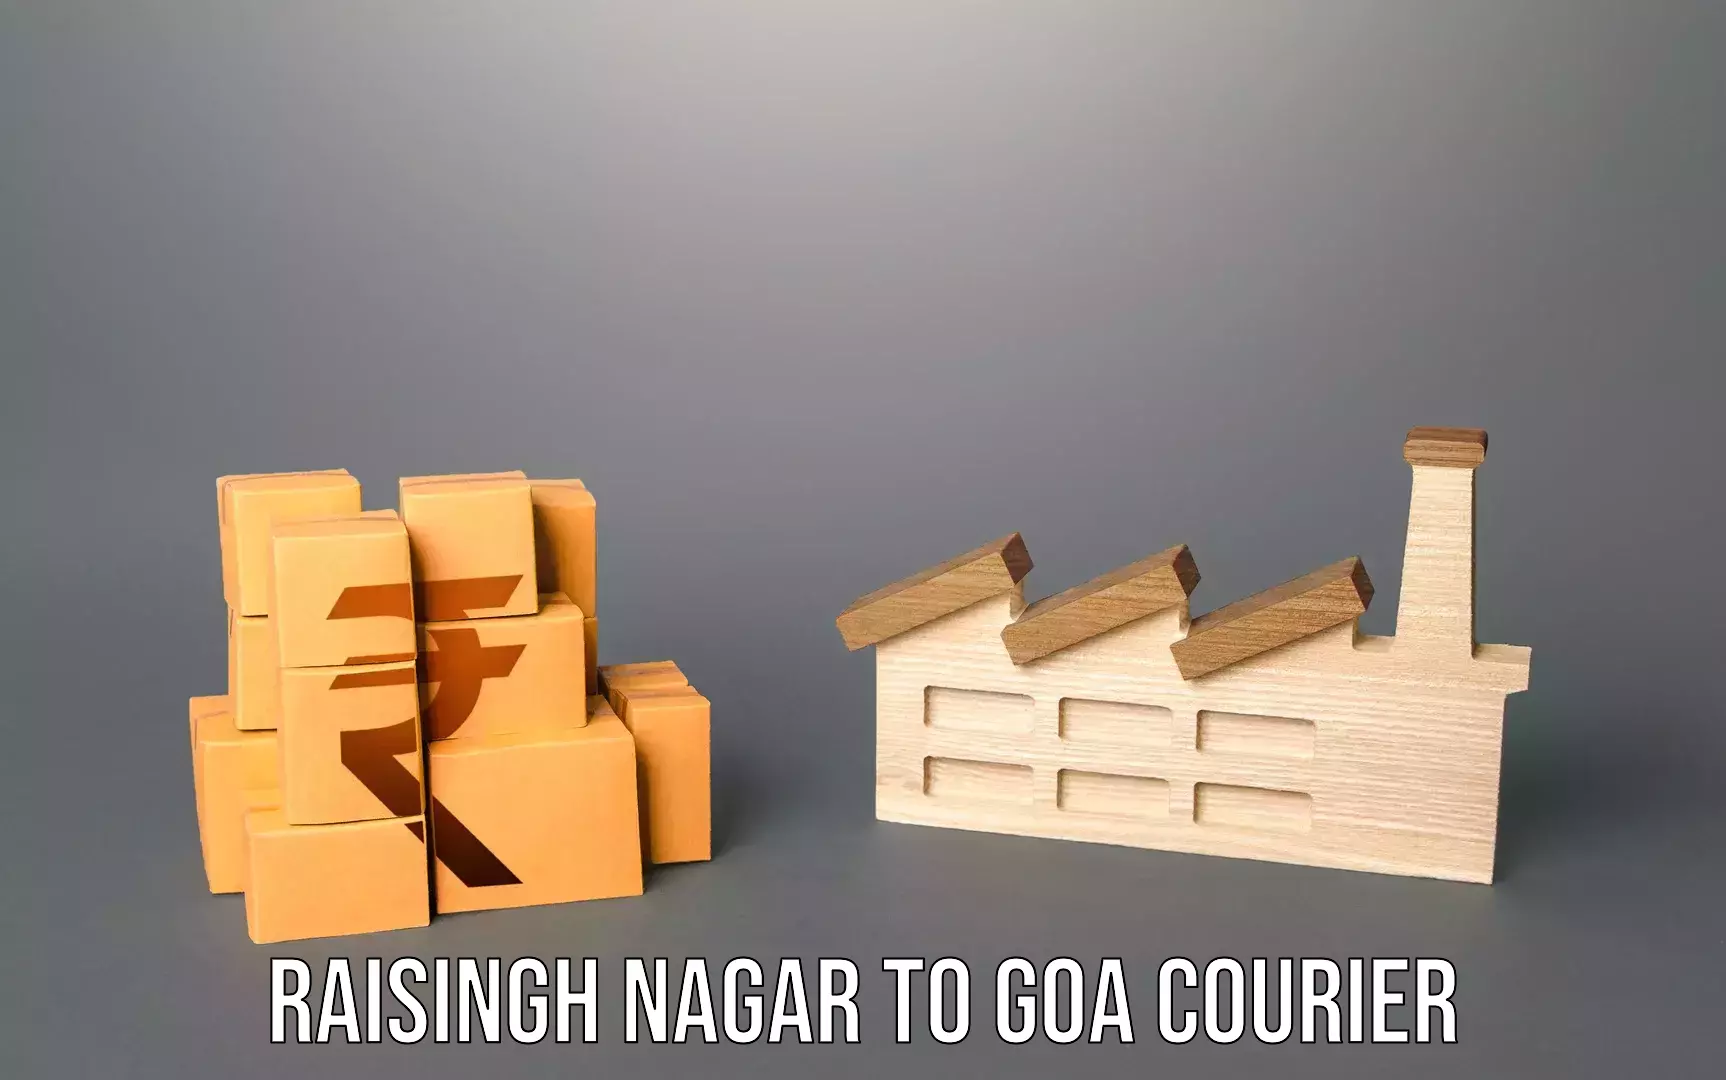 Baggage transport scheduler Raisingh Nagar to IIT Goa